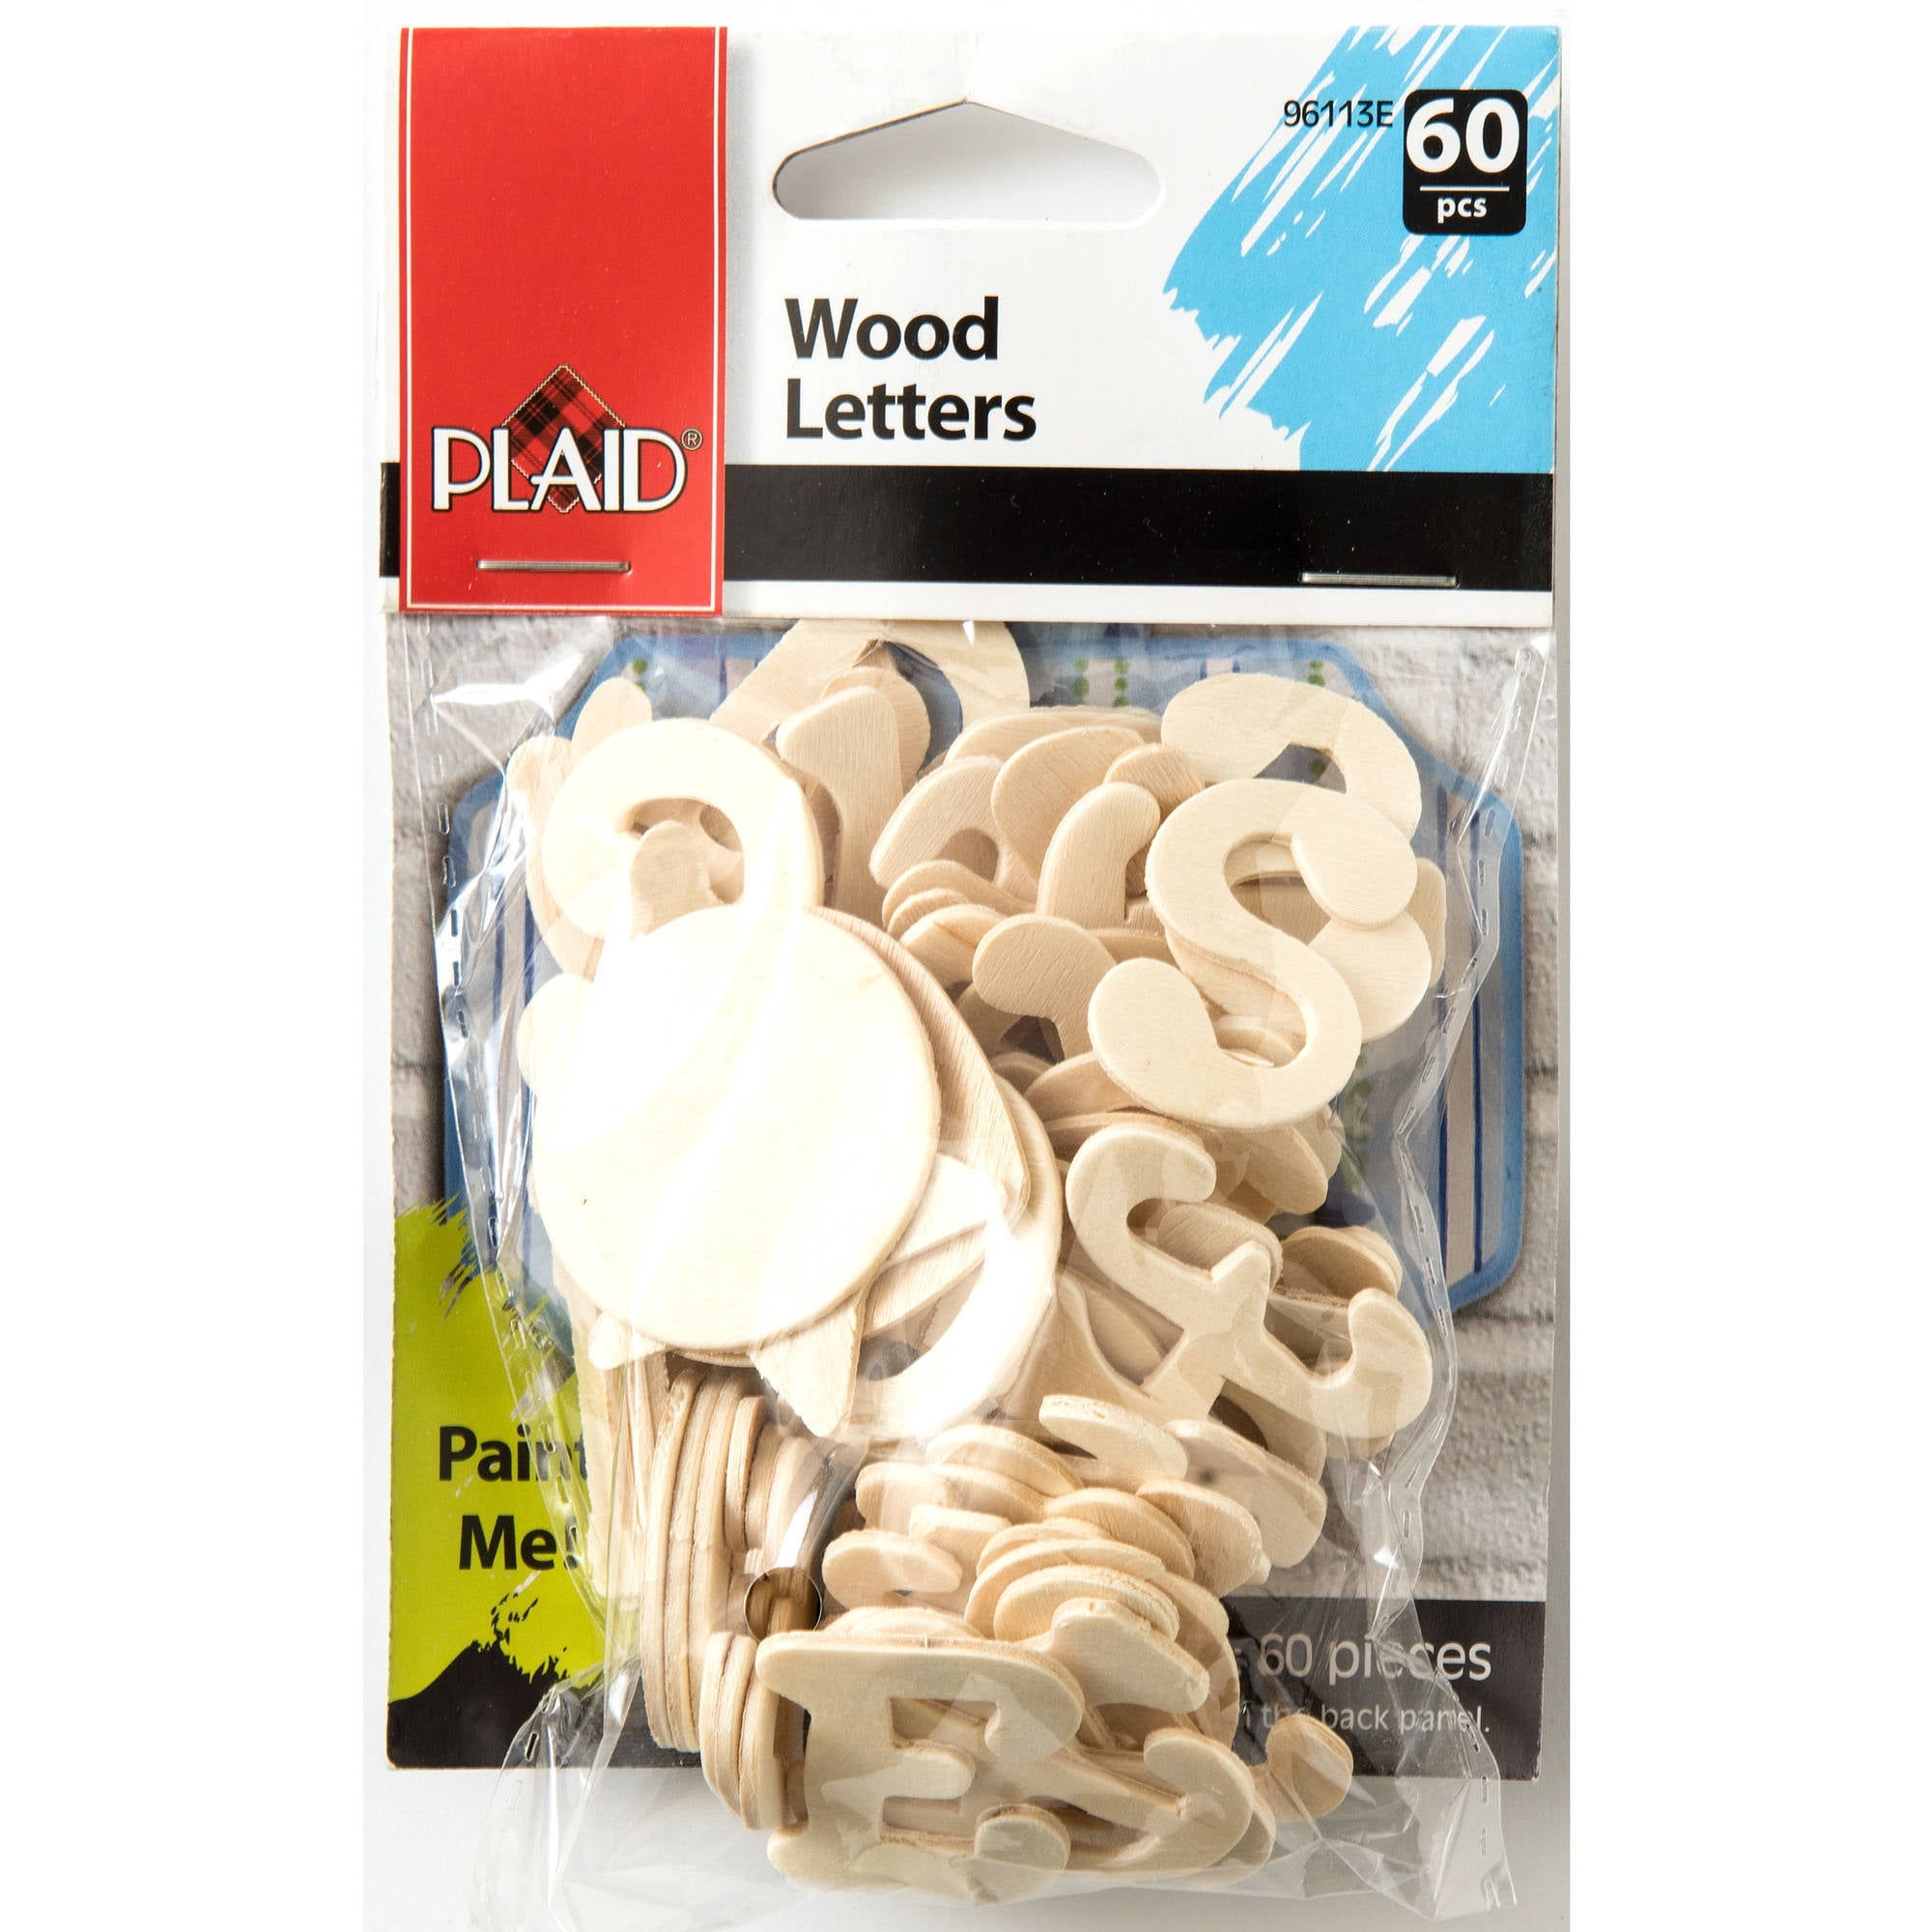 Plaid 96113E Unpainted Wood Surface, Cursive Letter Pack, 60 Piece, 1"